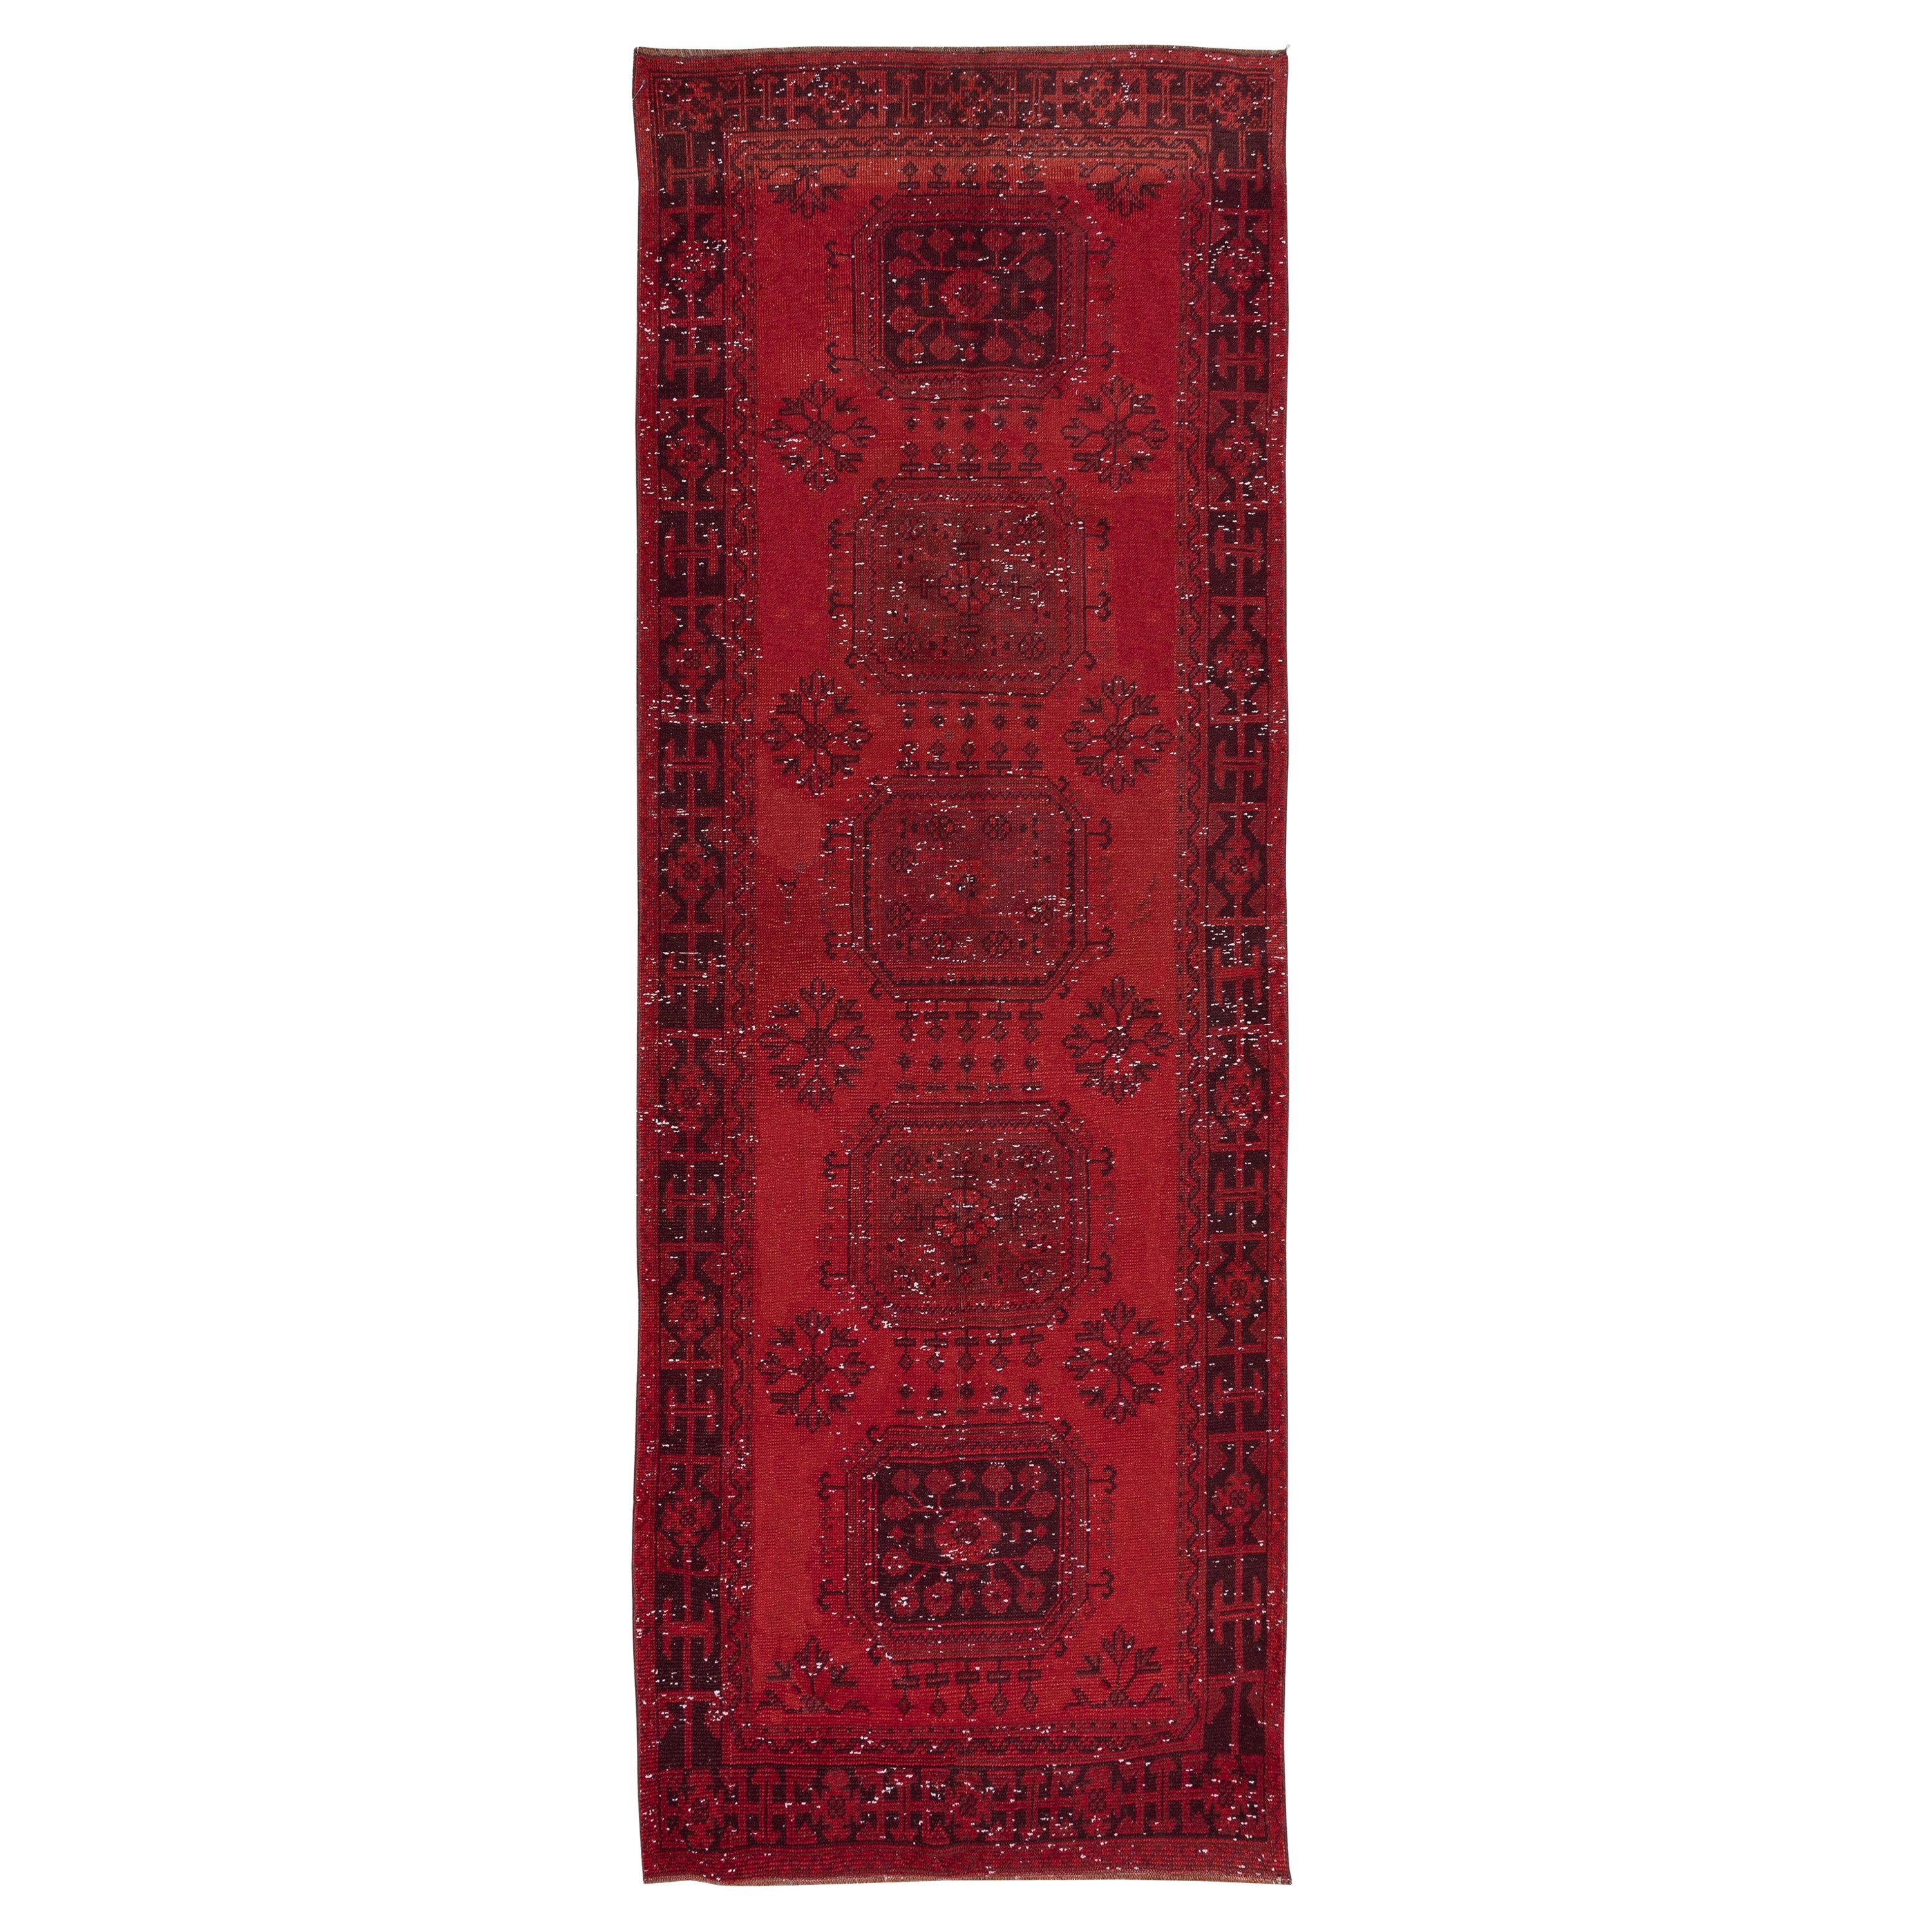 4x11.2 Ft Hand Knotted Runner Rug. Modern Turkish Hallway Carpet in Dark Red